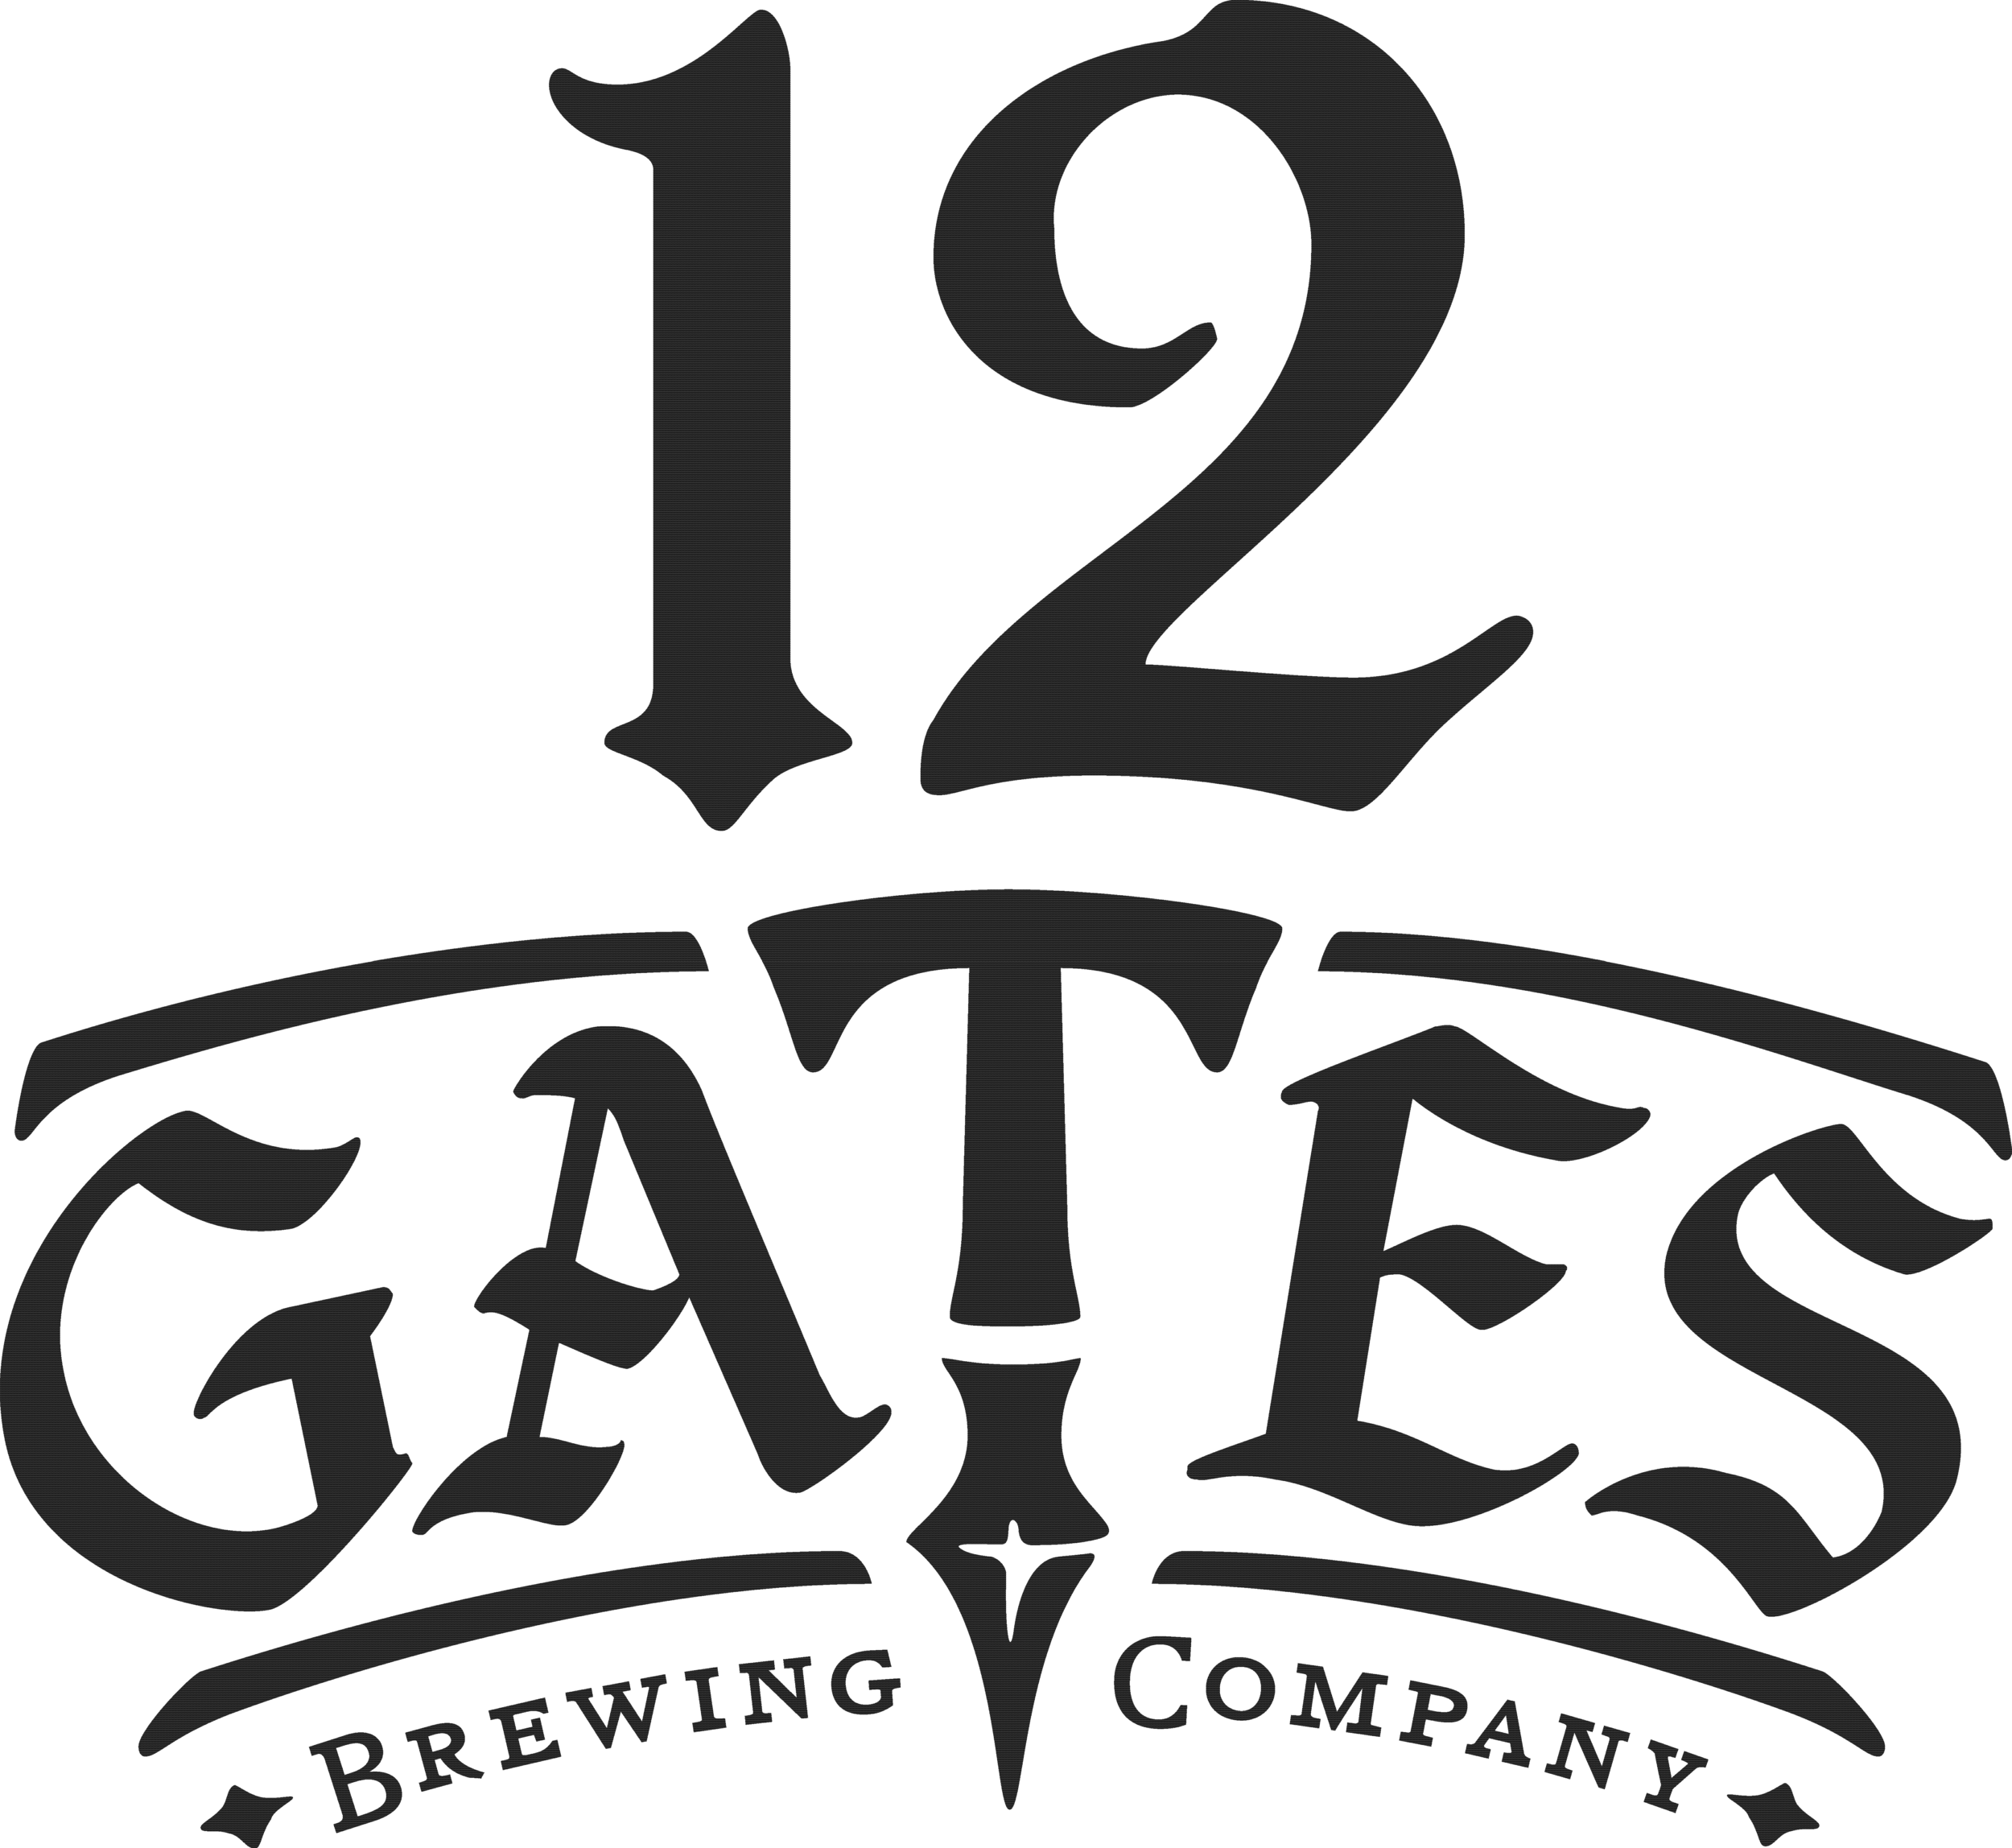 12_Gates-logo.png